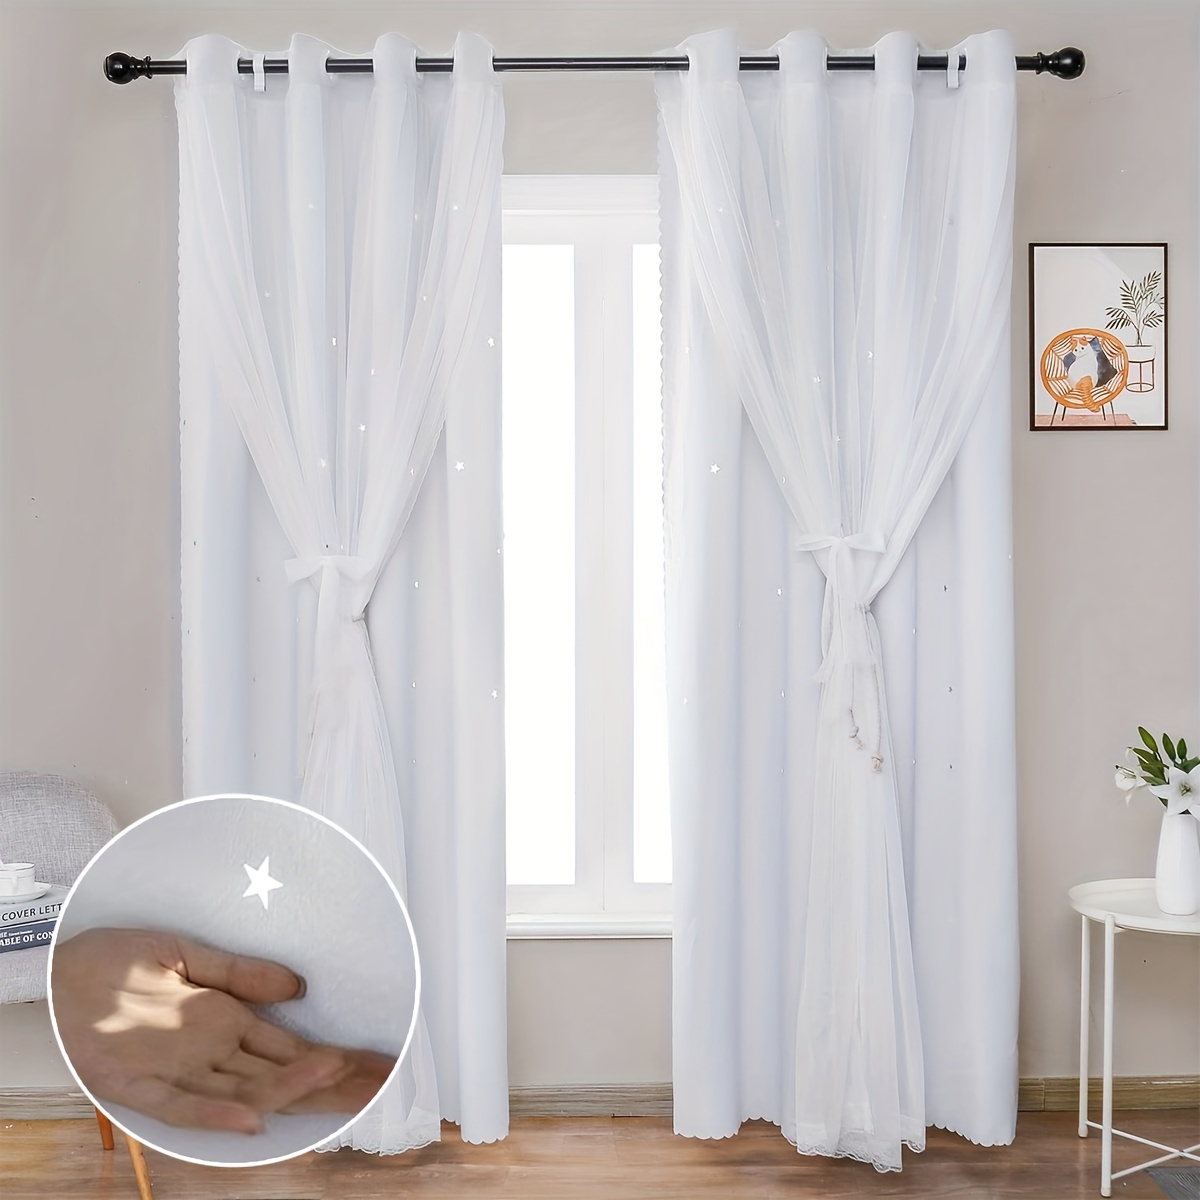 Cortinas para sala de estar, cortina de ventana de doble capa con diseño de  estrella hueca, cortinas para decoración del hogar, cortinas para